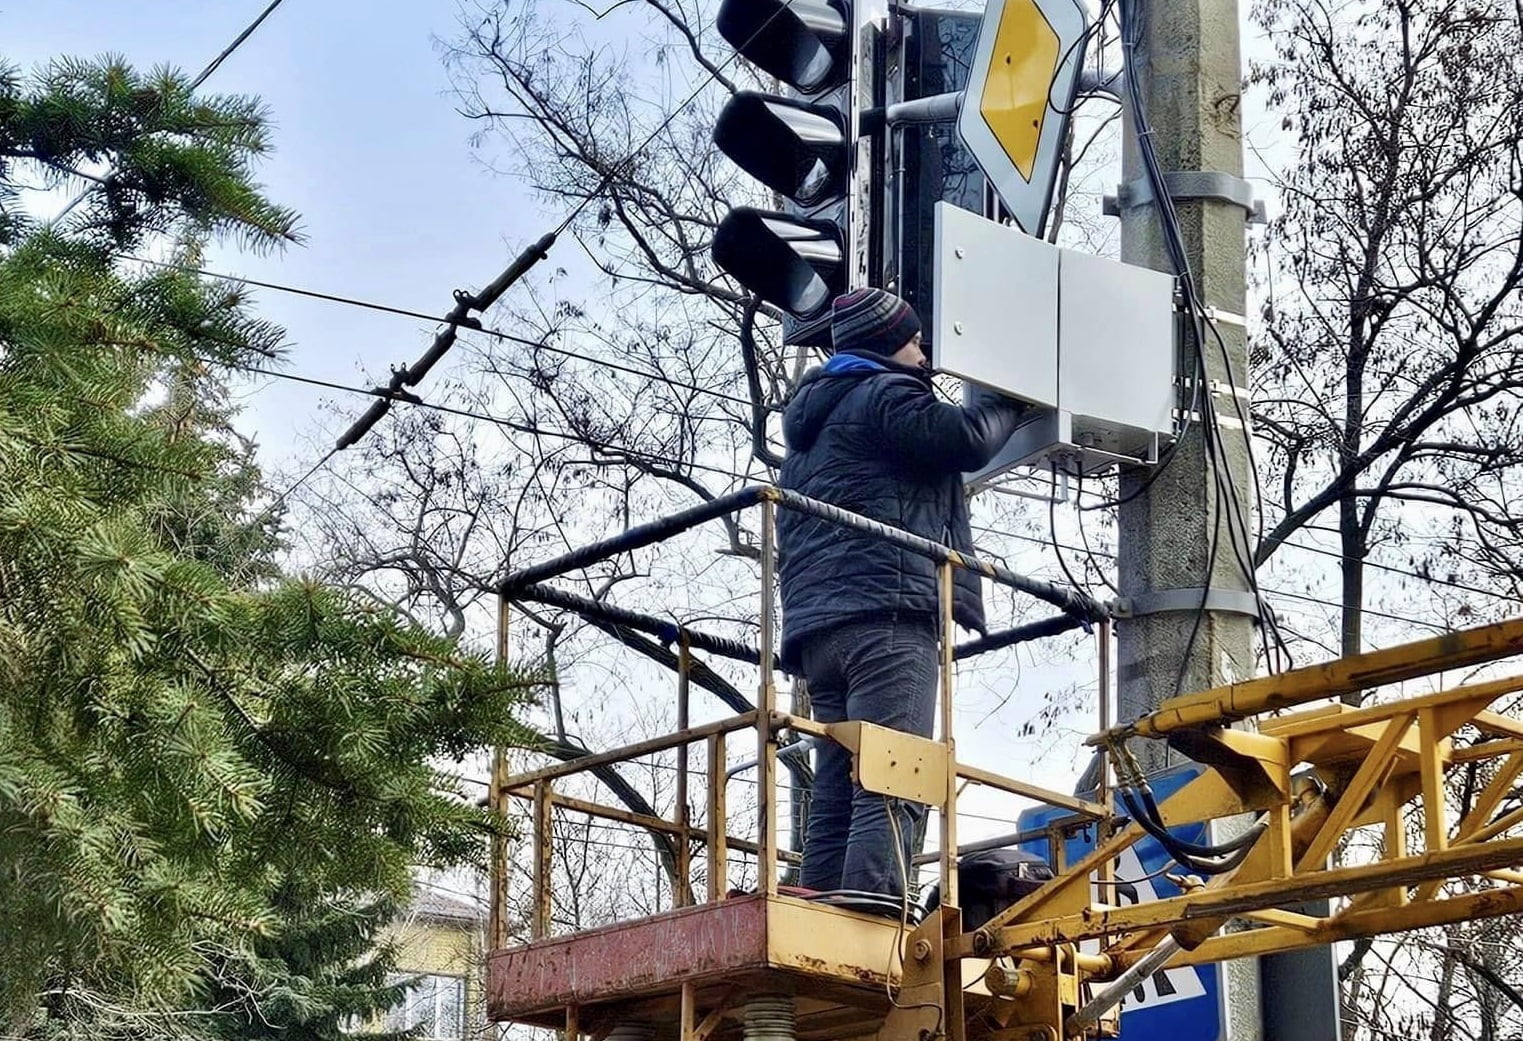 Світлофор біля дитячої лікарні у Краматорську працюватиме «за запитом пішохода»